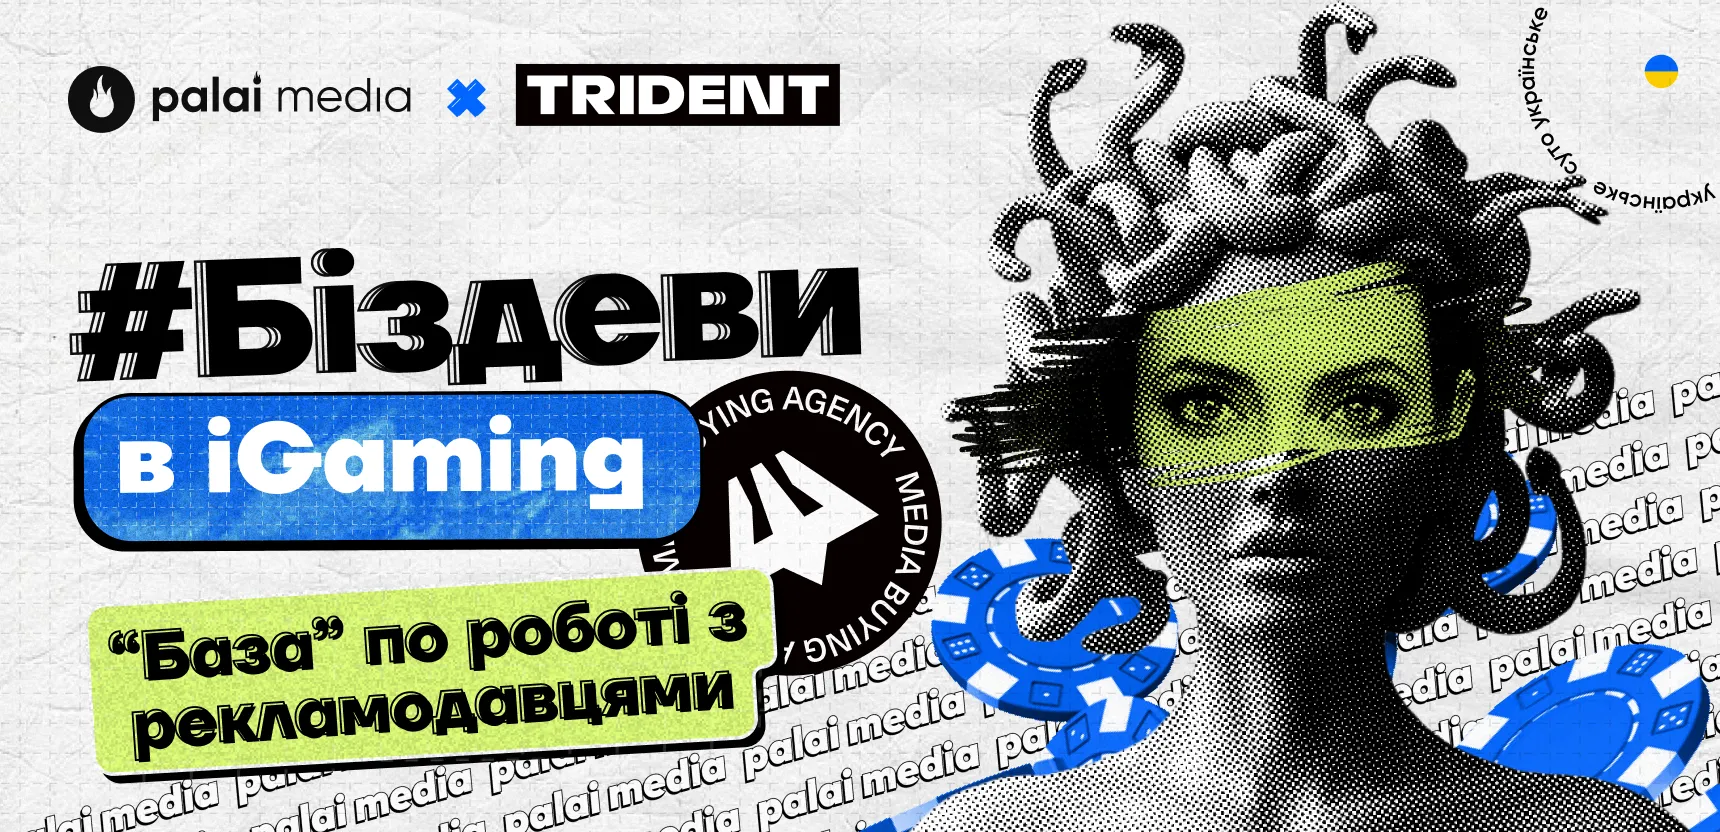 “Біздєви” в iGaming: гайд по роботі з рекламодавцями від Trident